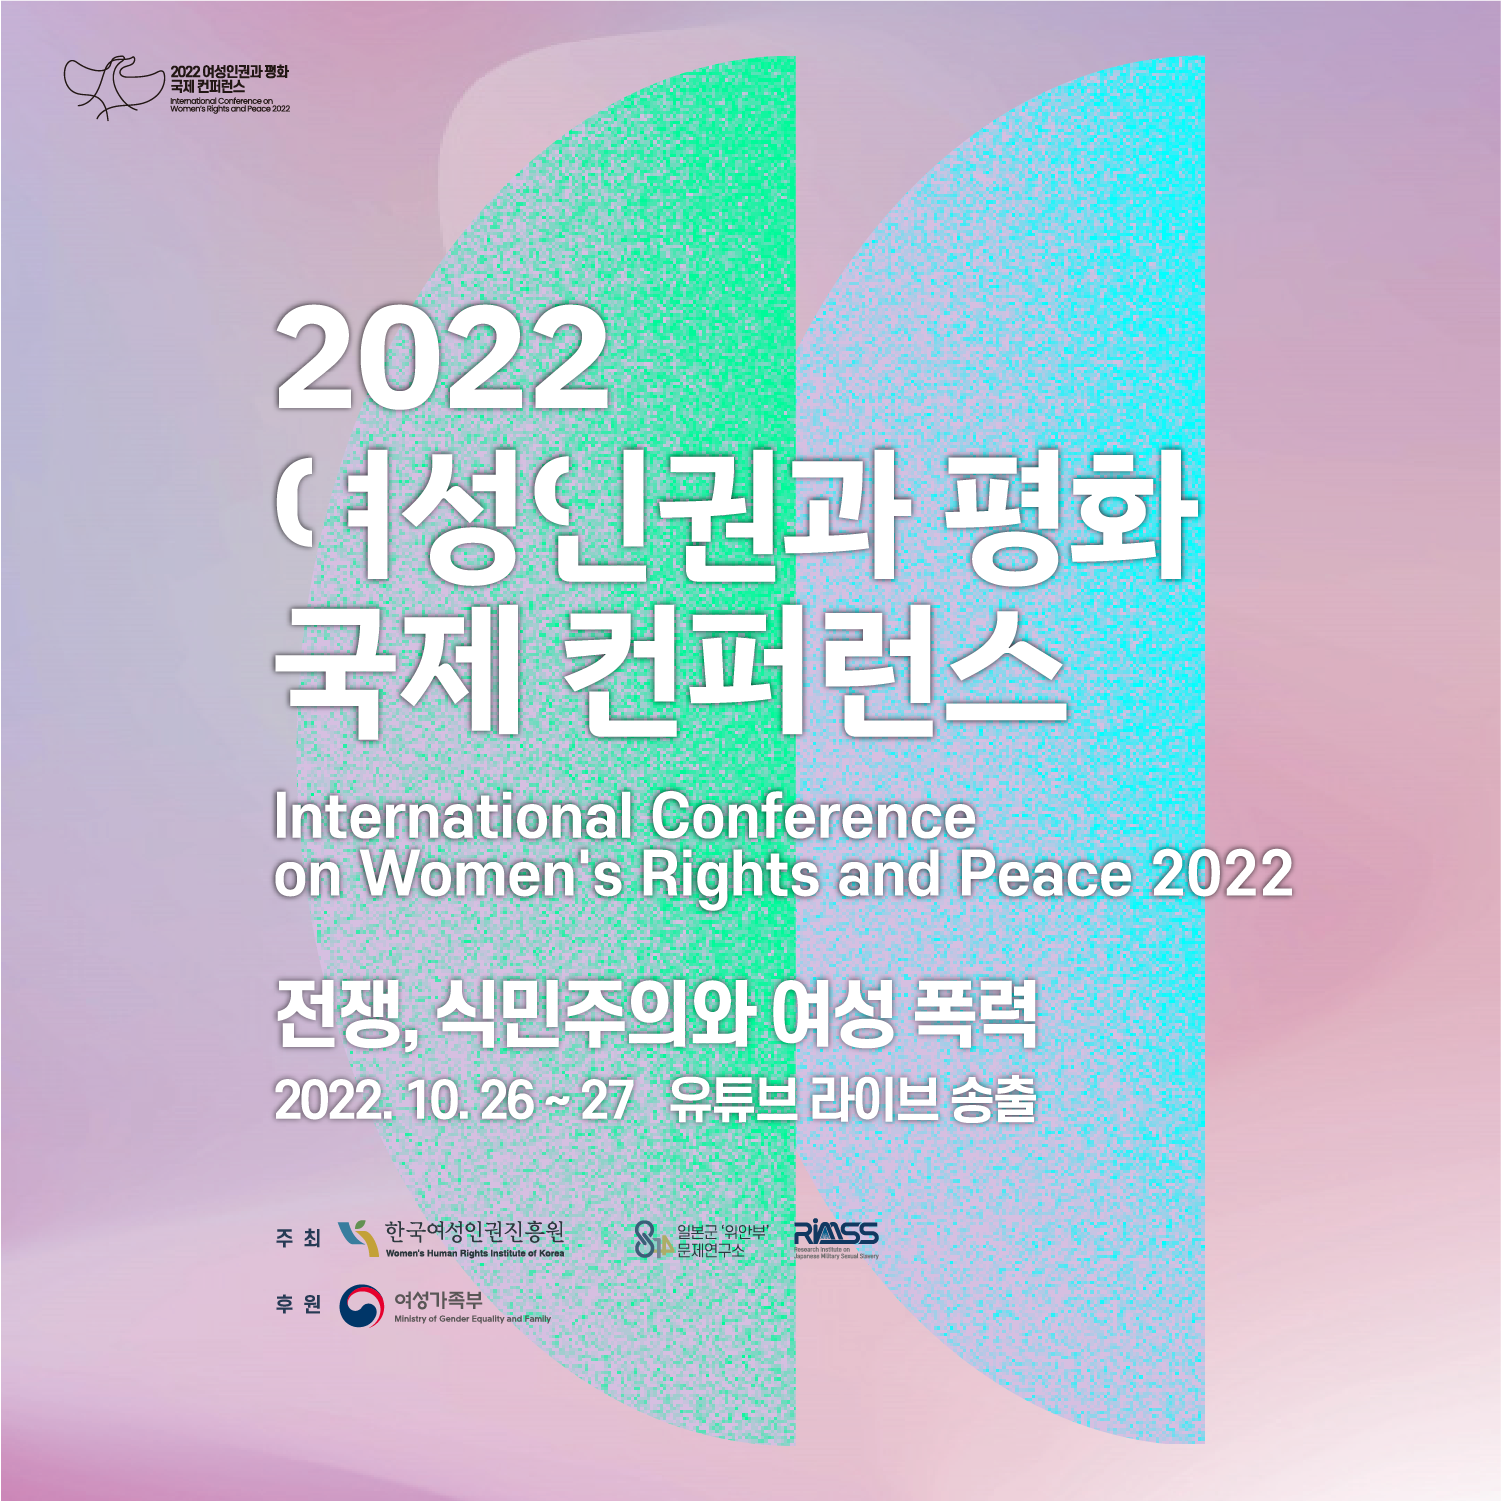 2022 여성인권과 평화 국제 컨퍼런스 Interational Conference on Womens Rights and Peace 2022 전장, 식민주의와 여성폭력